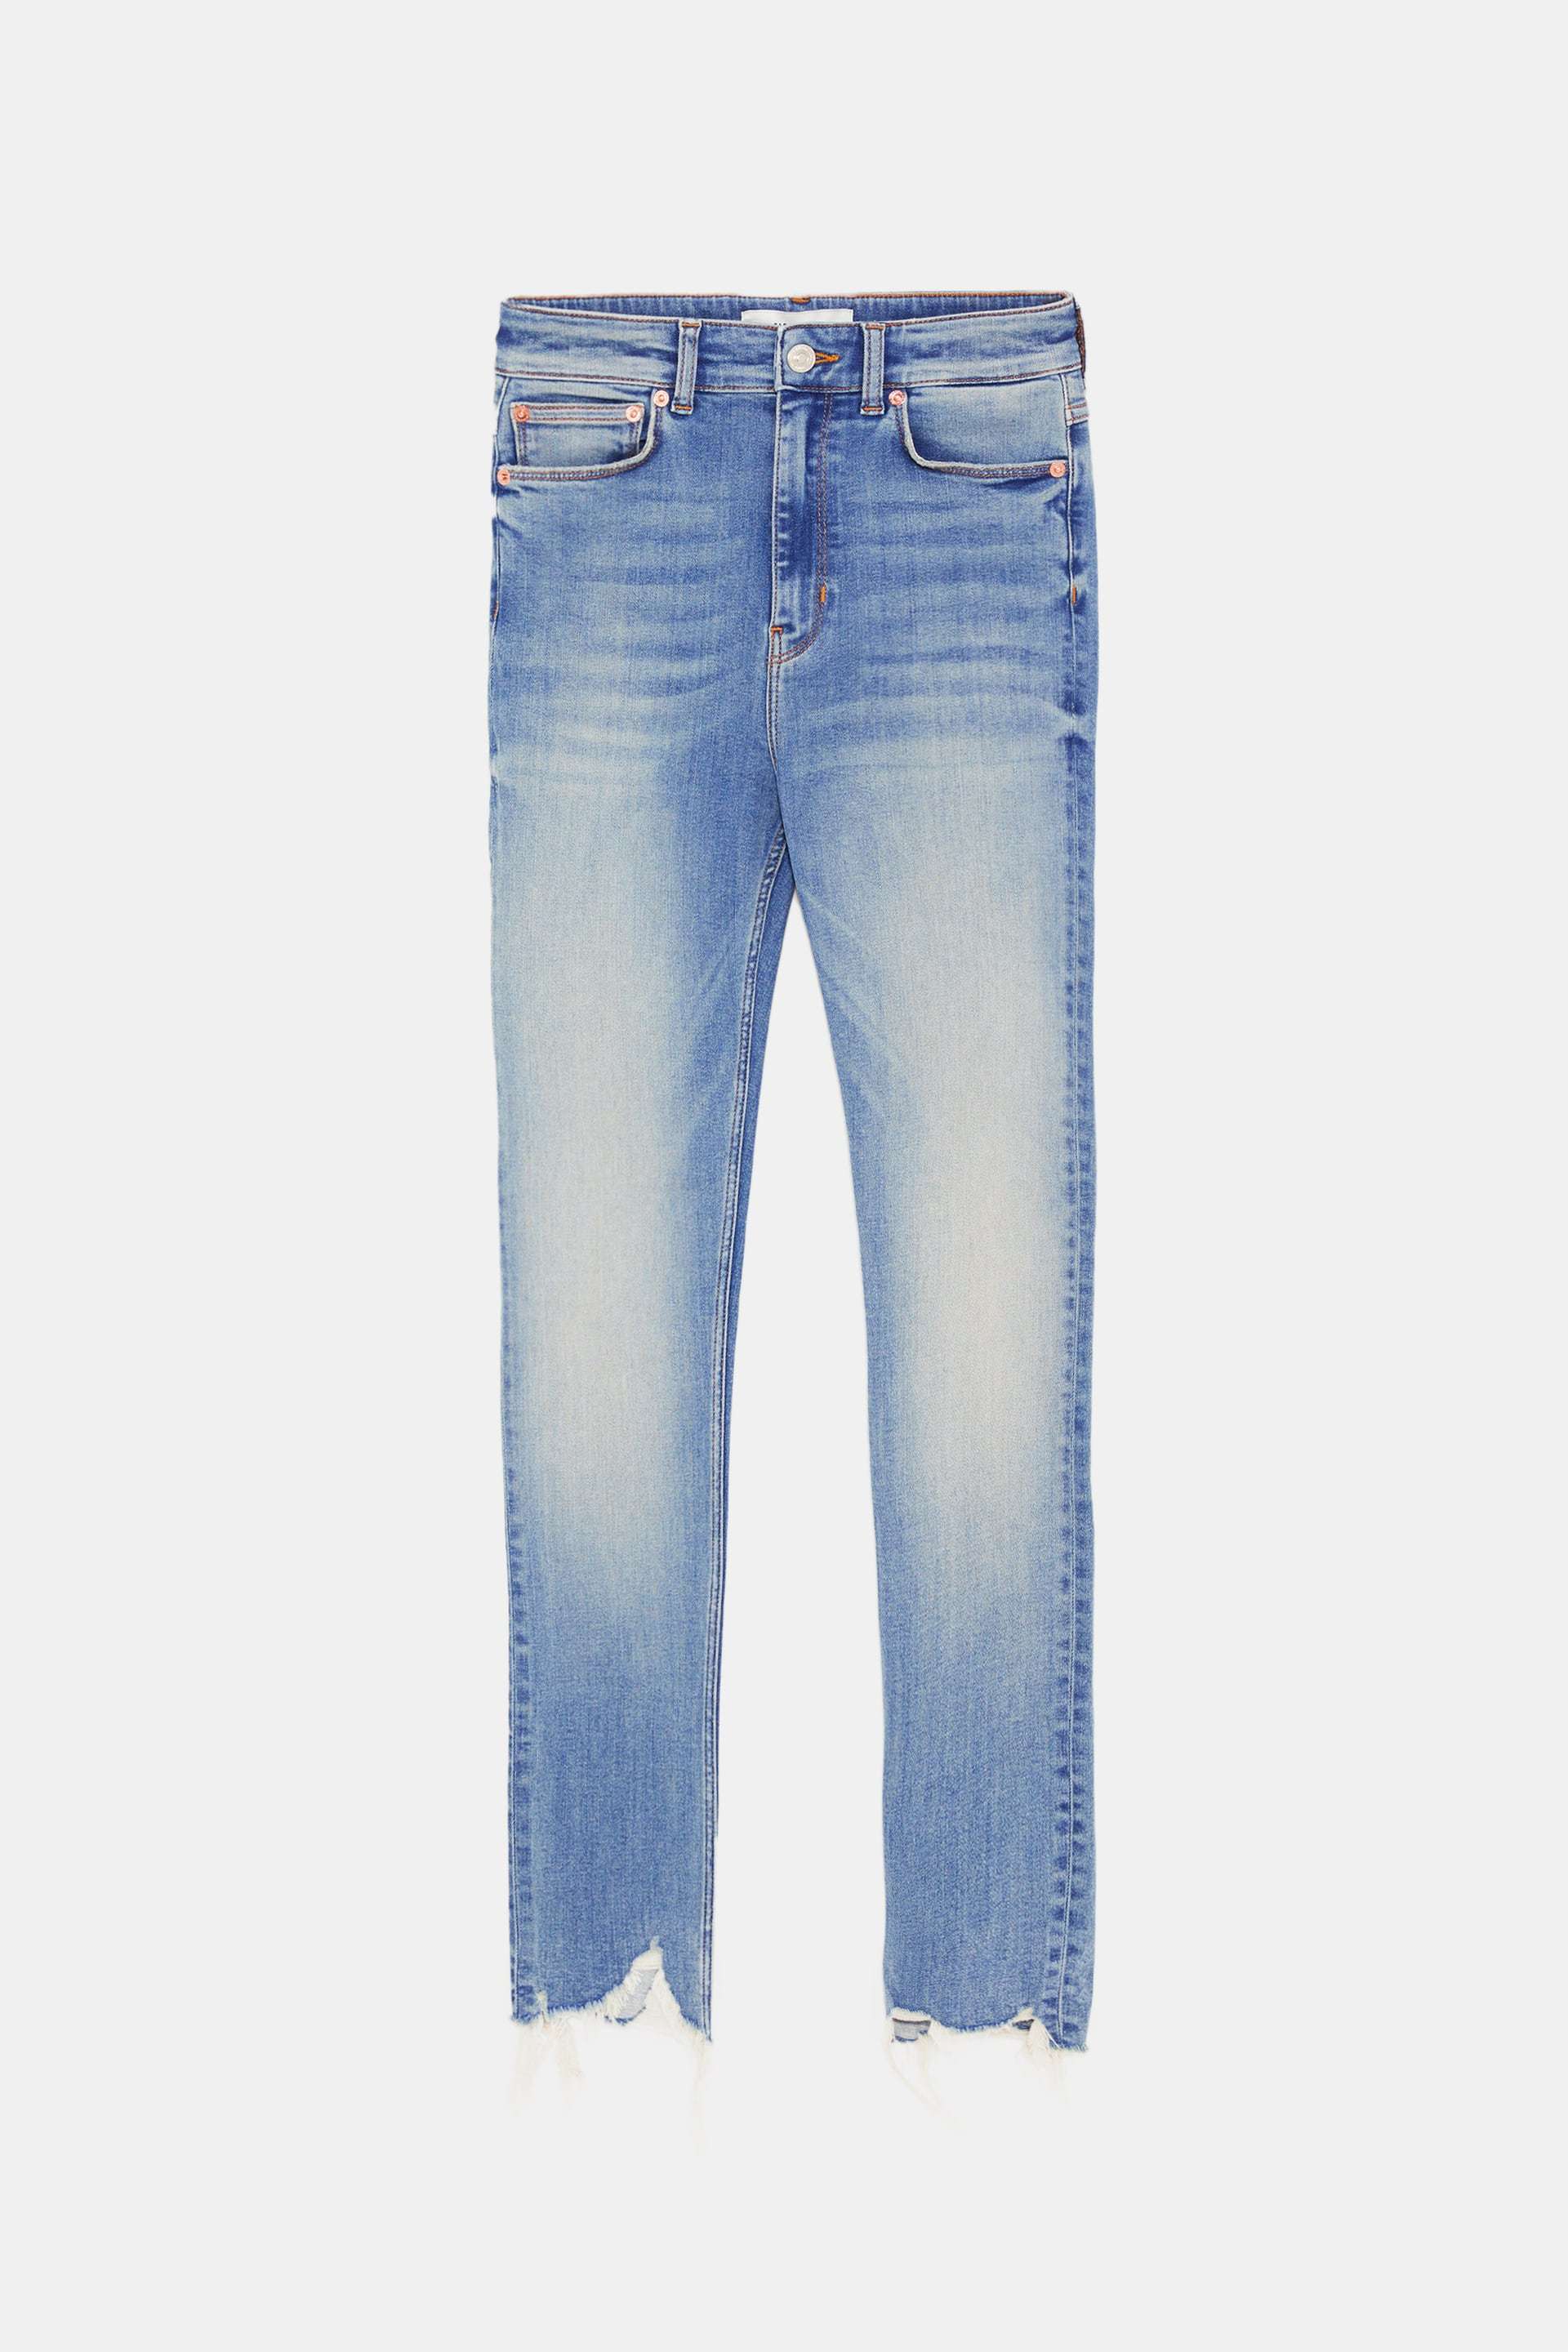 Jeans pitillo de Zara (29,95 euros).